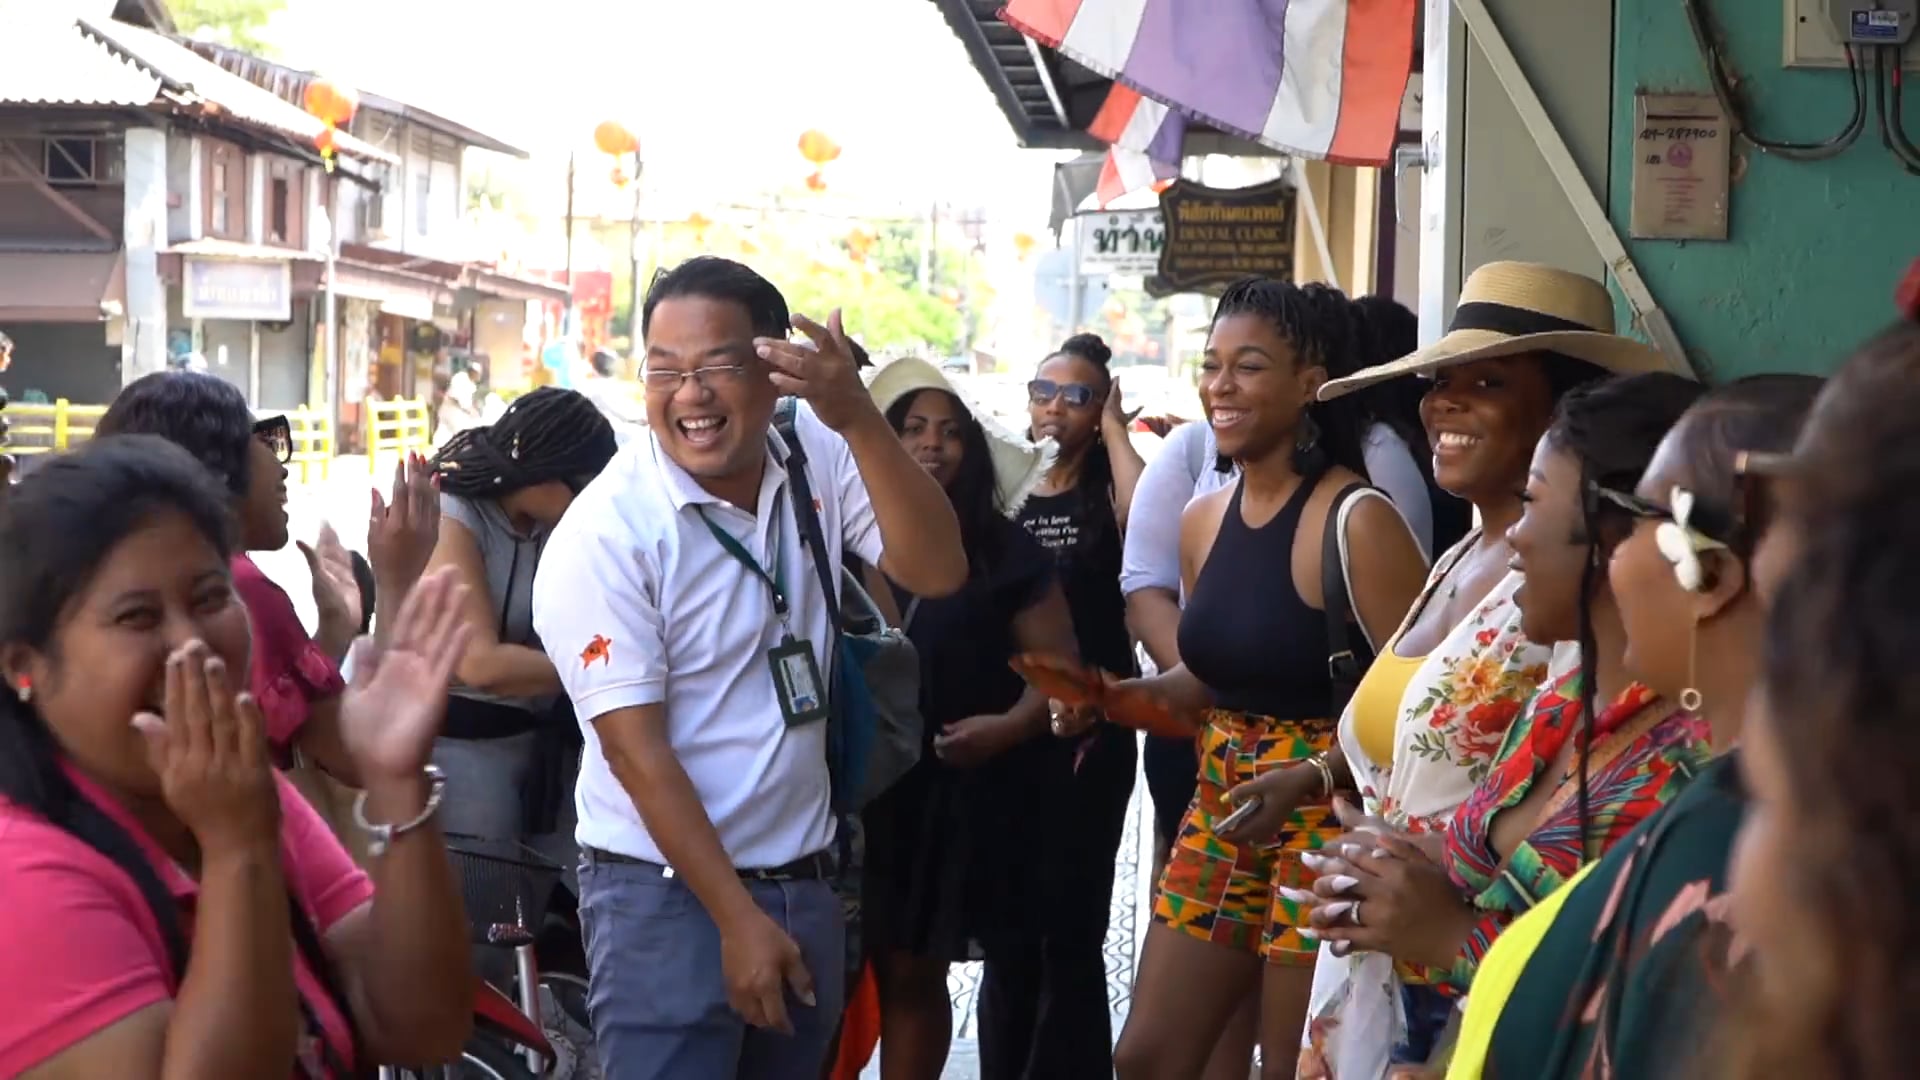 The Inn Crowd - Thailand girls trip (4 min promo)